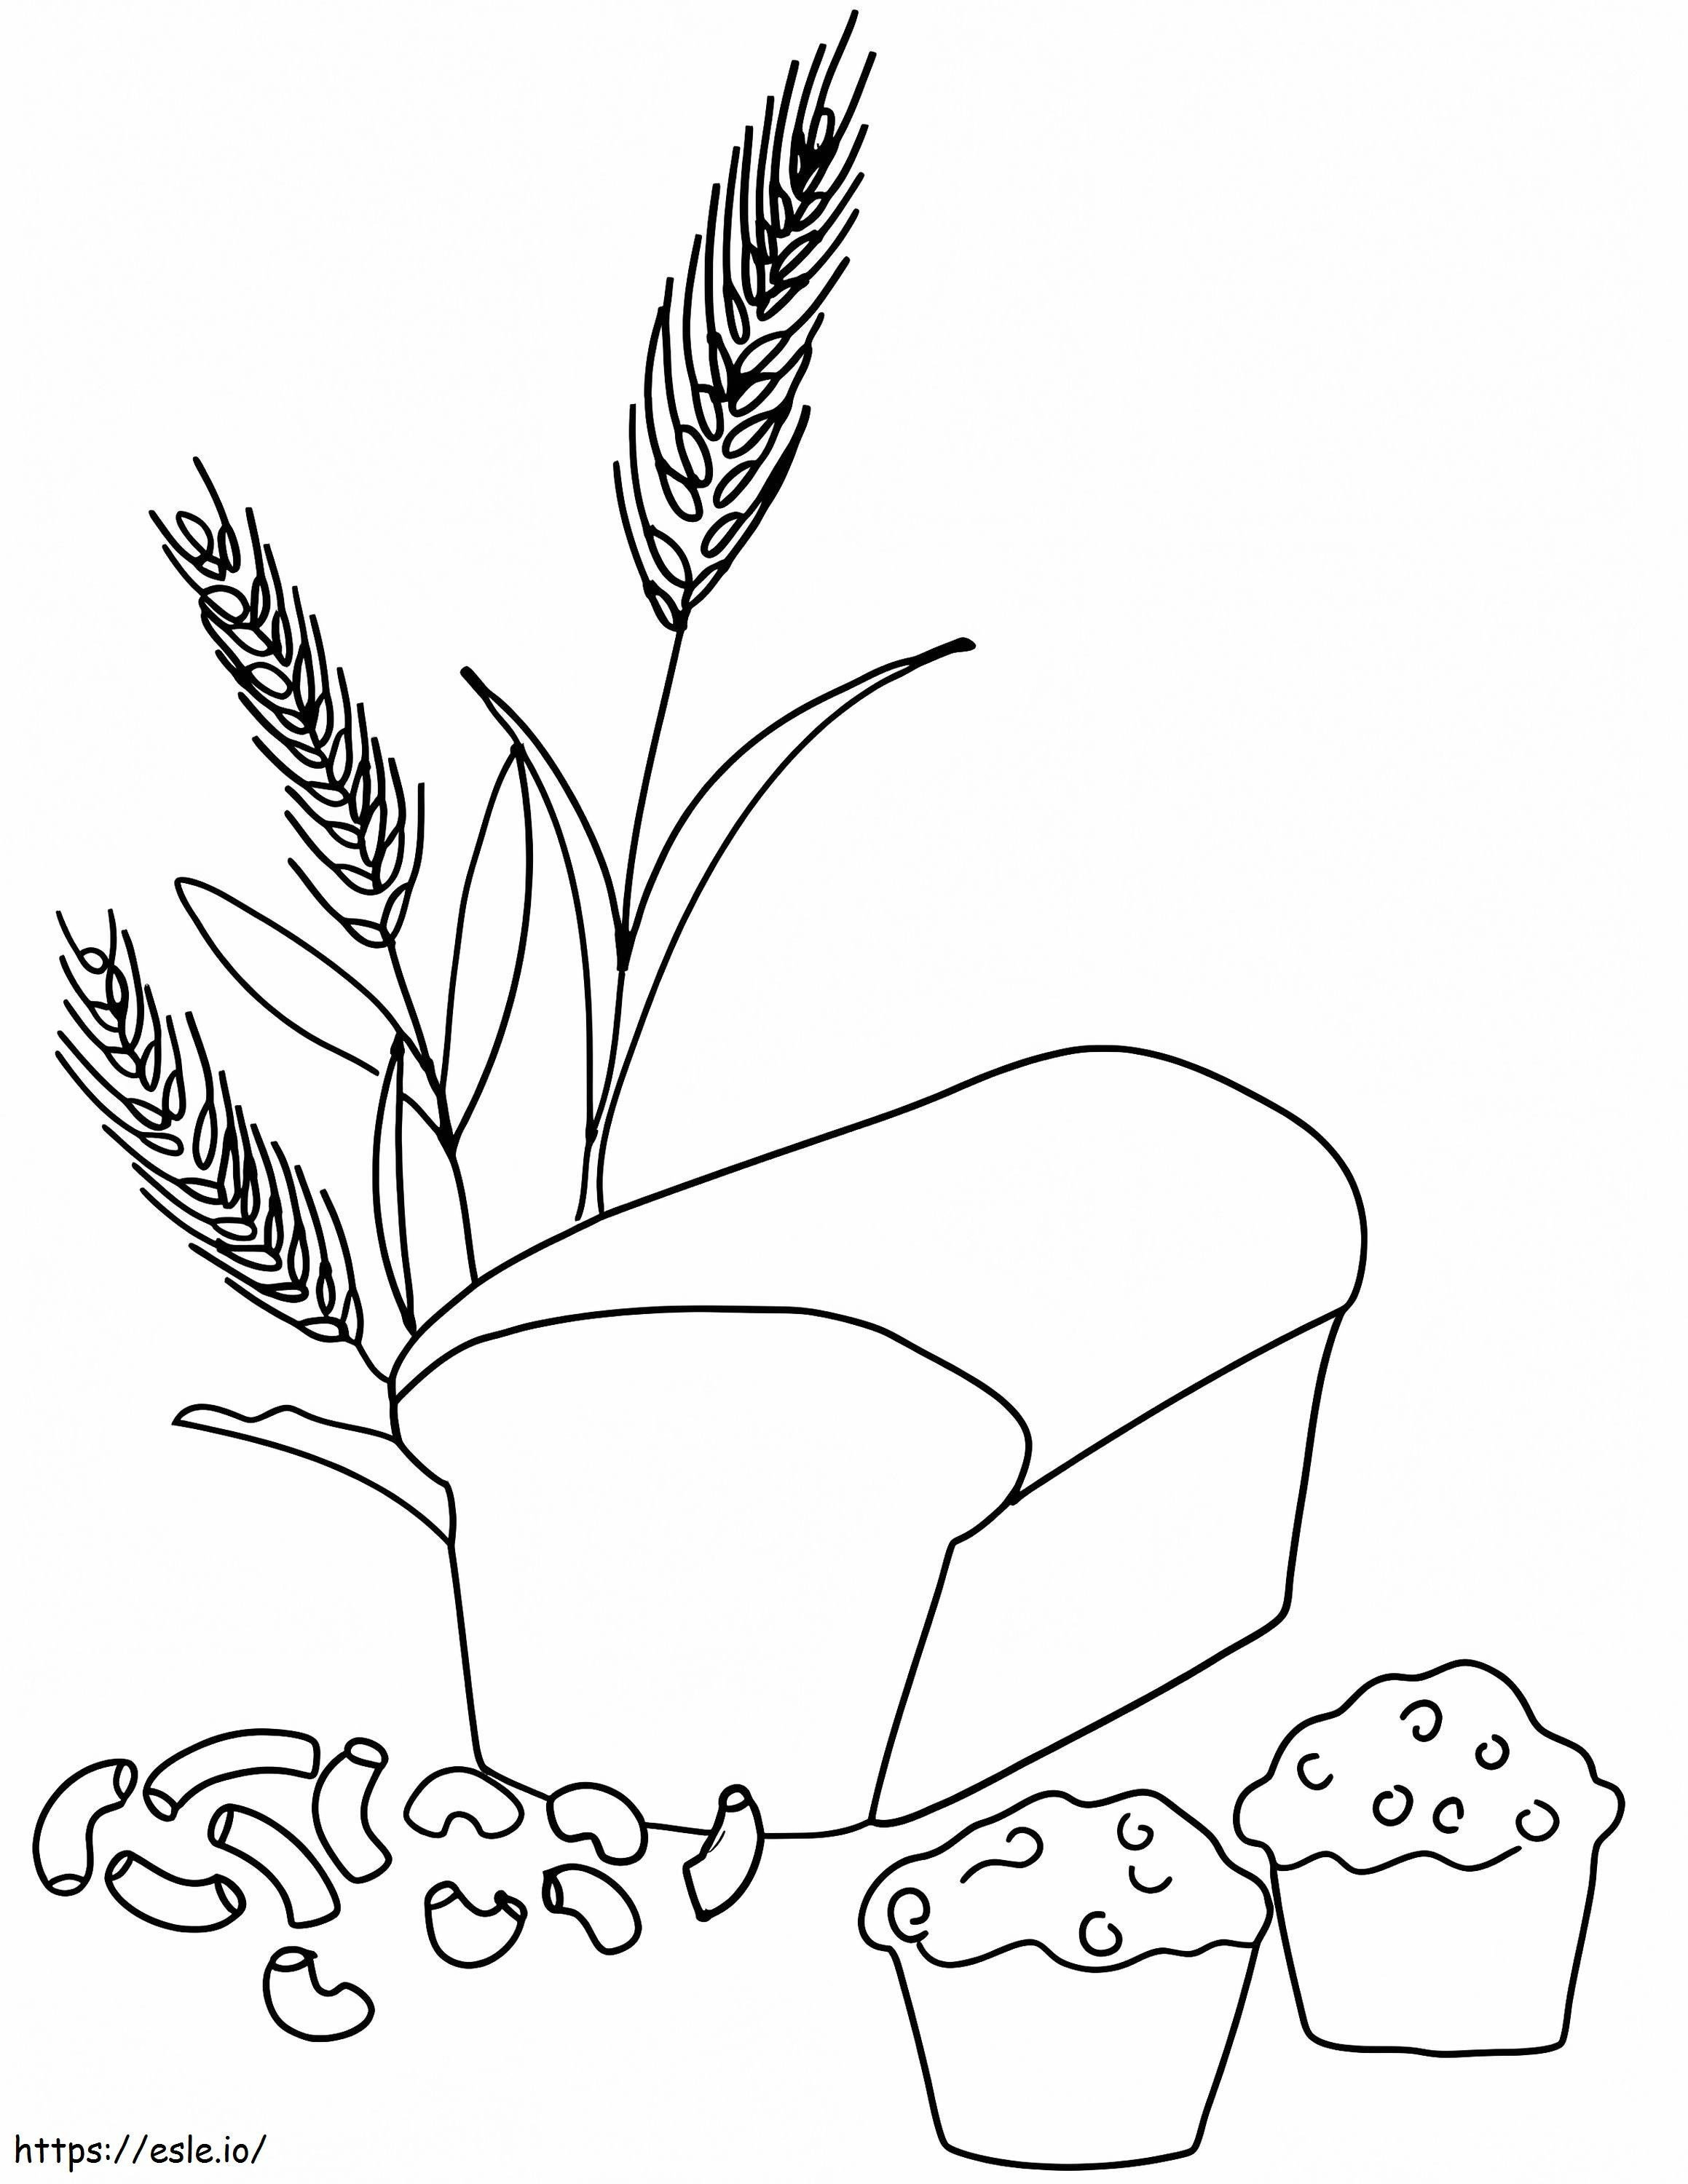 Buğday Fabrikası Ekmek ve Pastacılık Fabrikası boyama